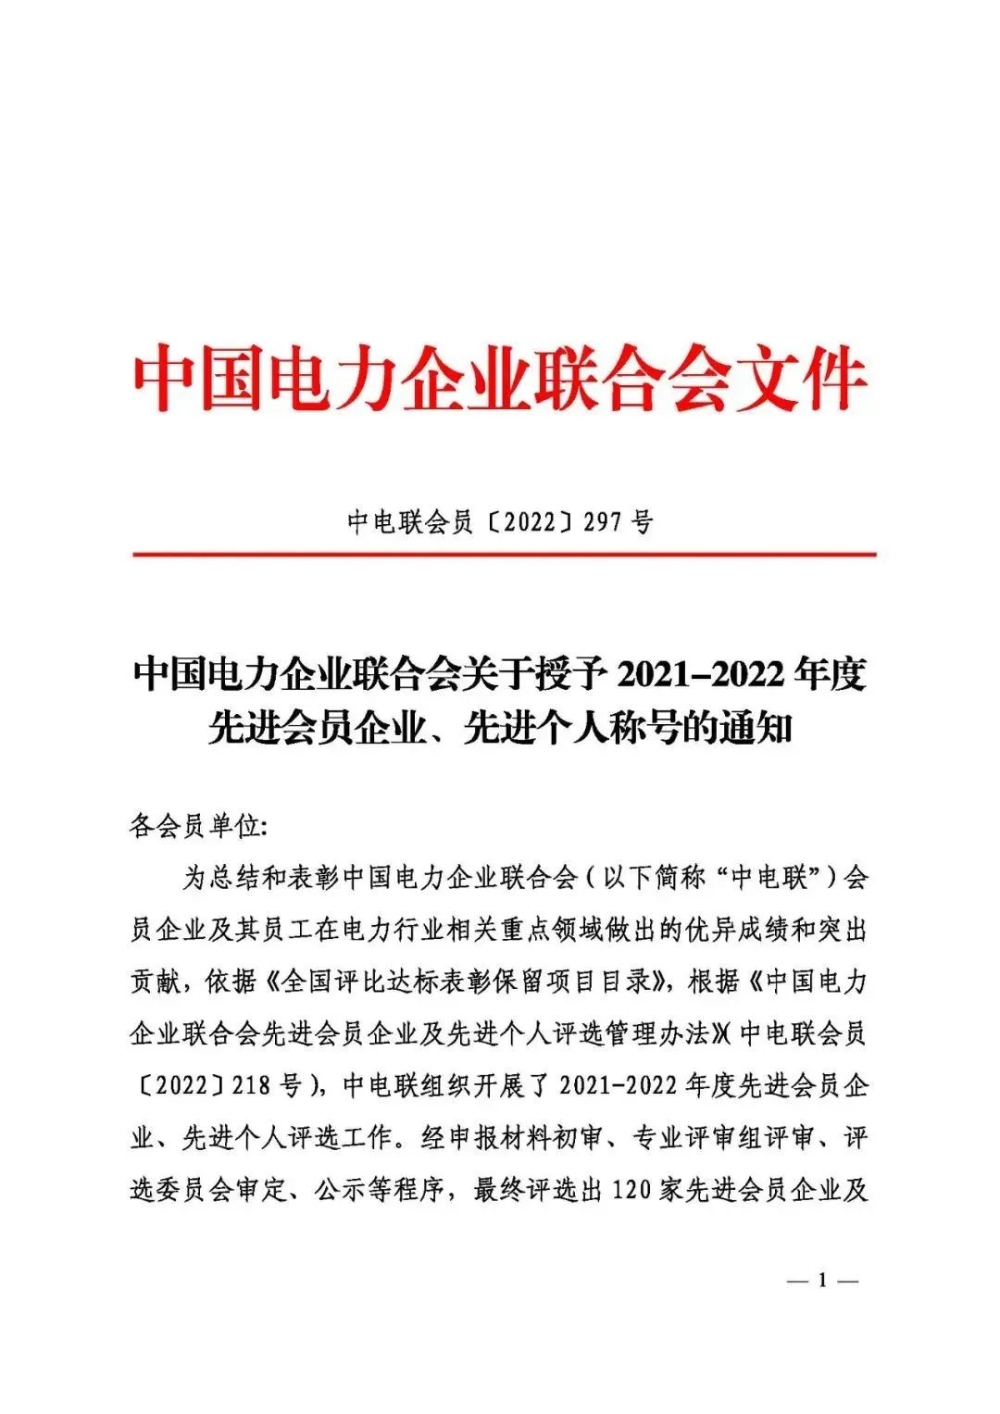 中电联表彰2021-2022年度先进会员企业、先进个人-3